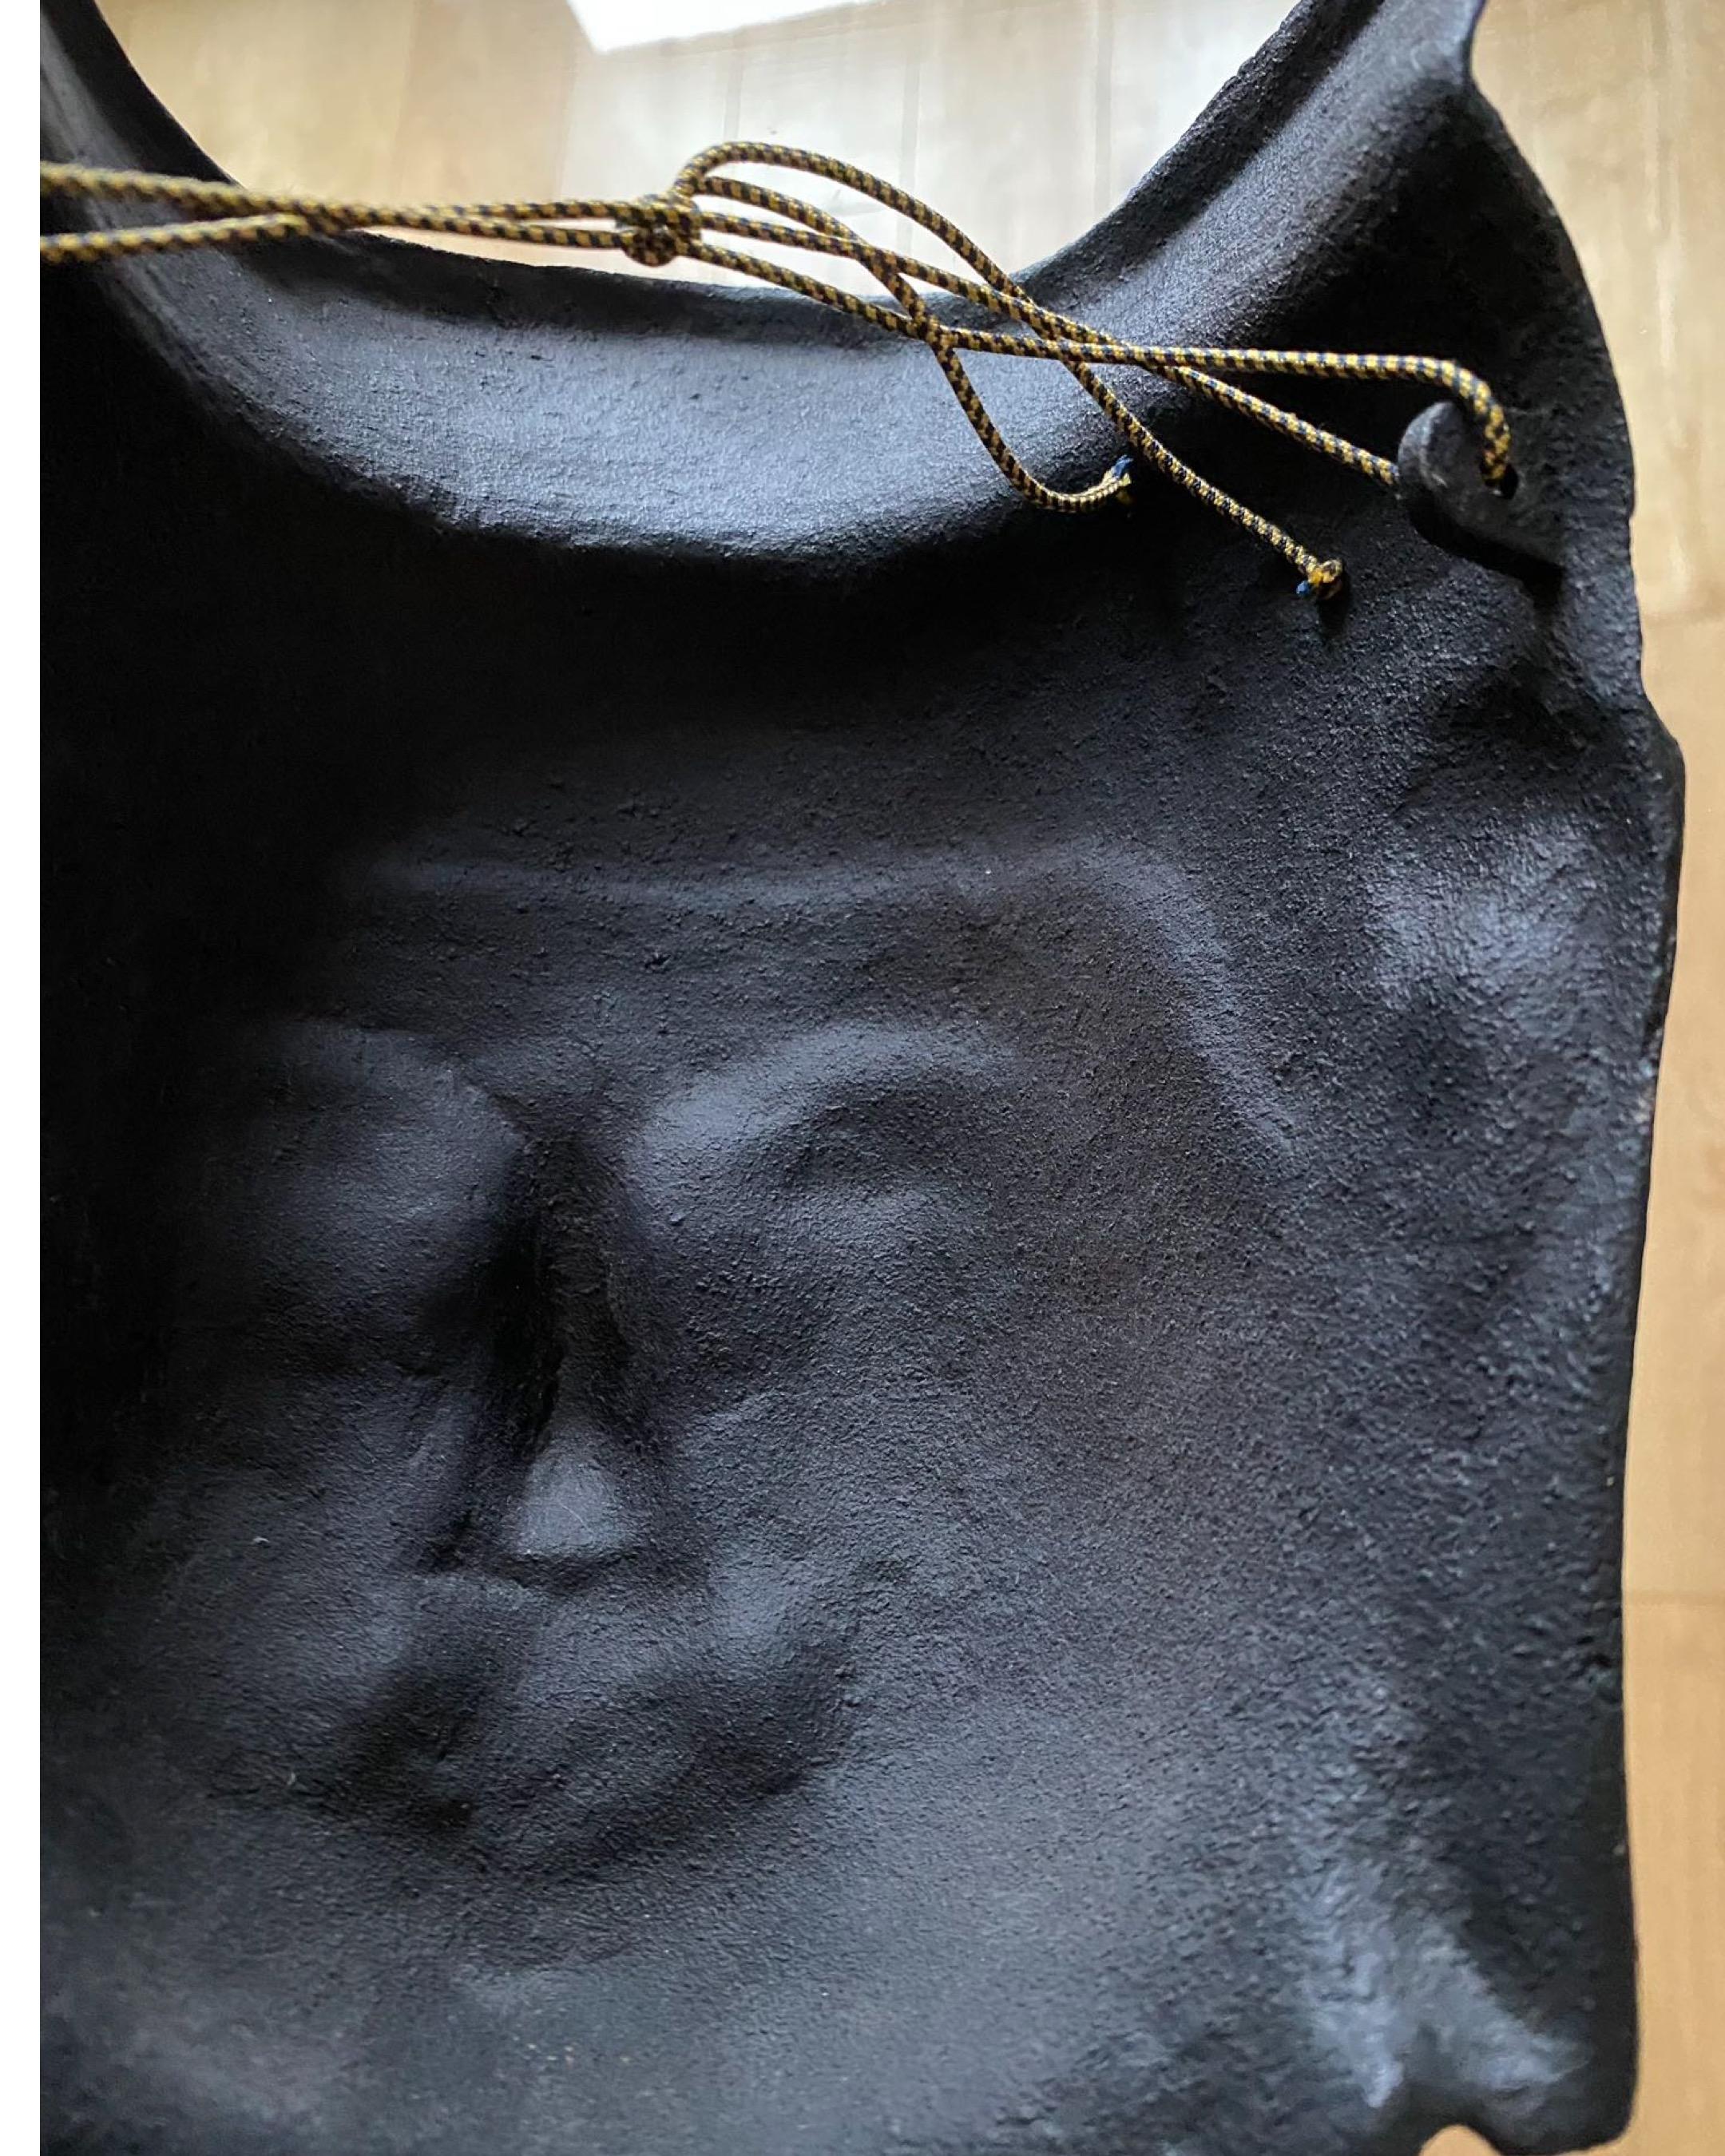 Japanese Buddha Bosatsu-Cast Iron sculpture mask-by Akaoka Copperware-GSY Select 5